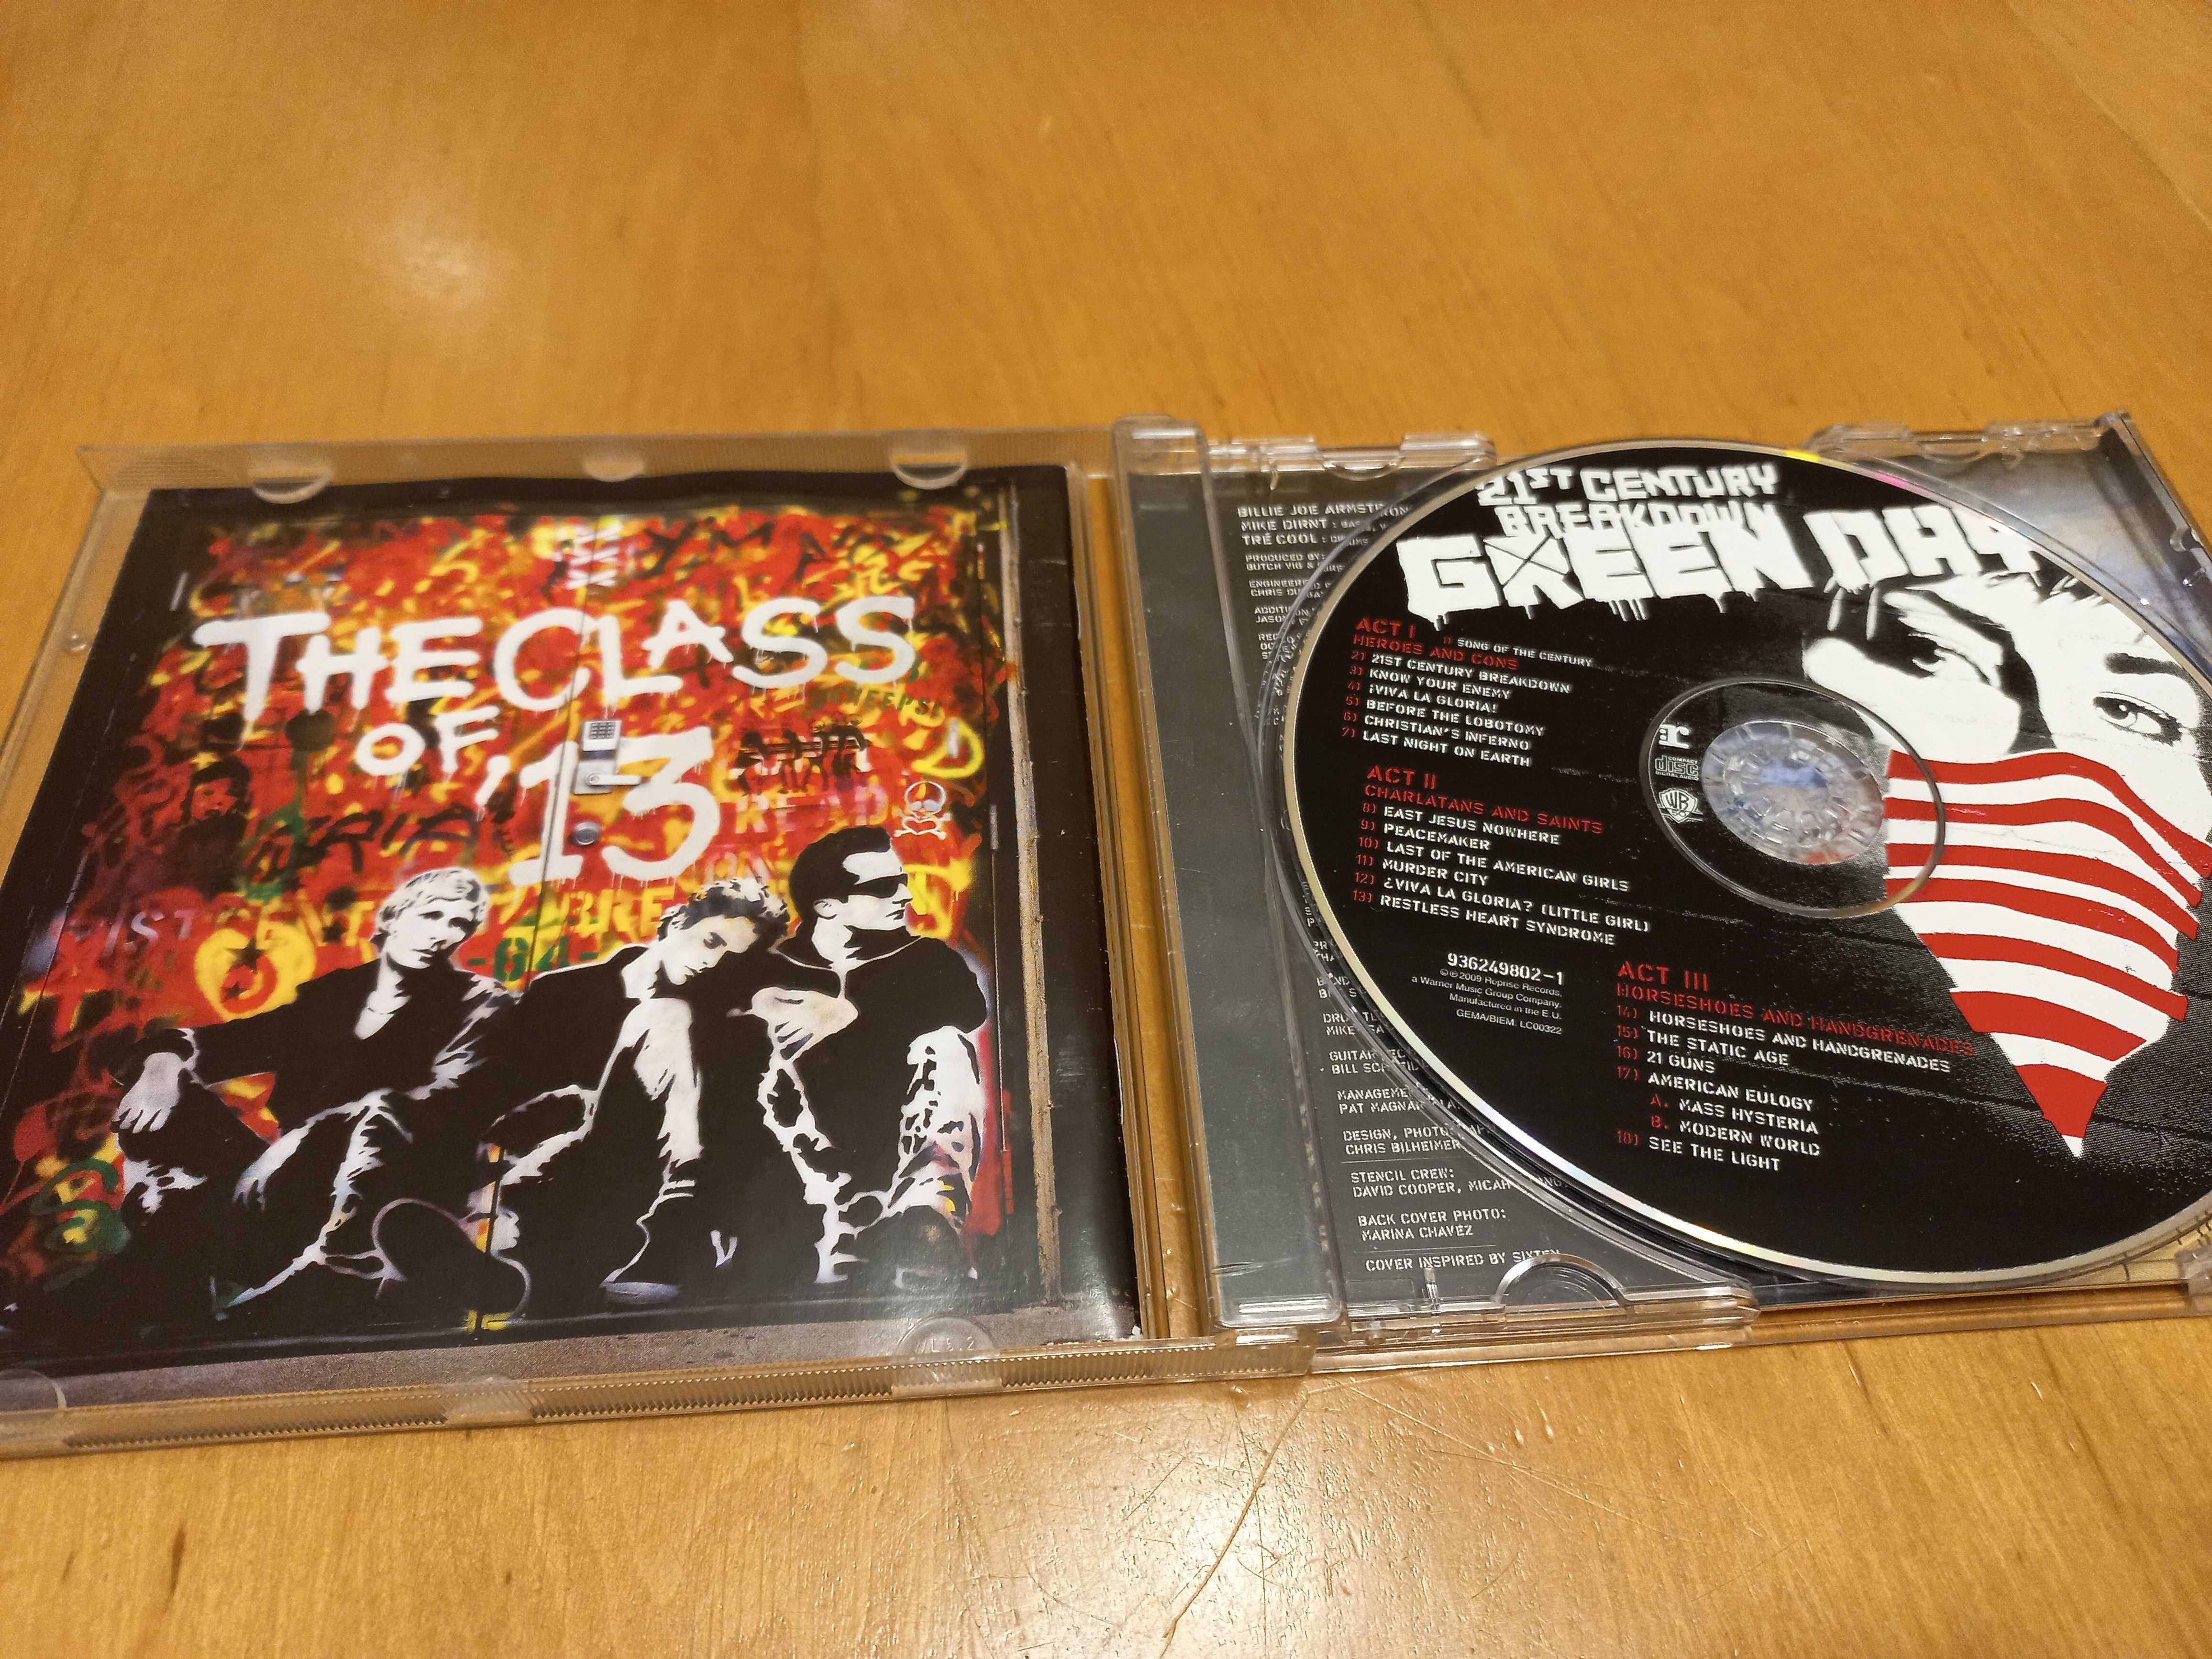 !! 2 płyta CD za 5 zł !! - Green Day, "21st century breakdown"